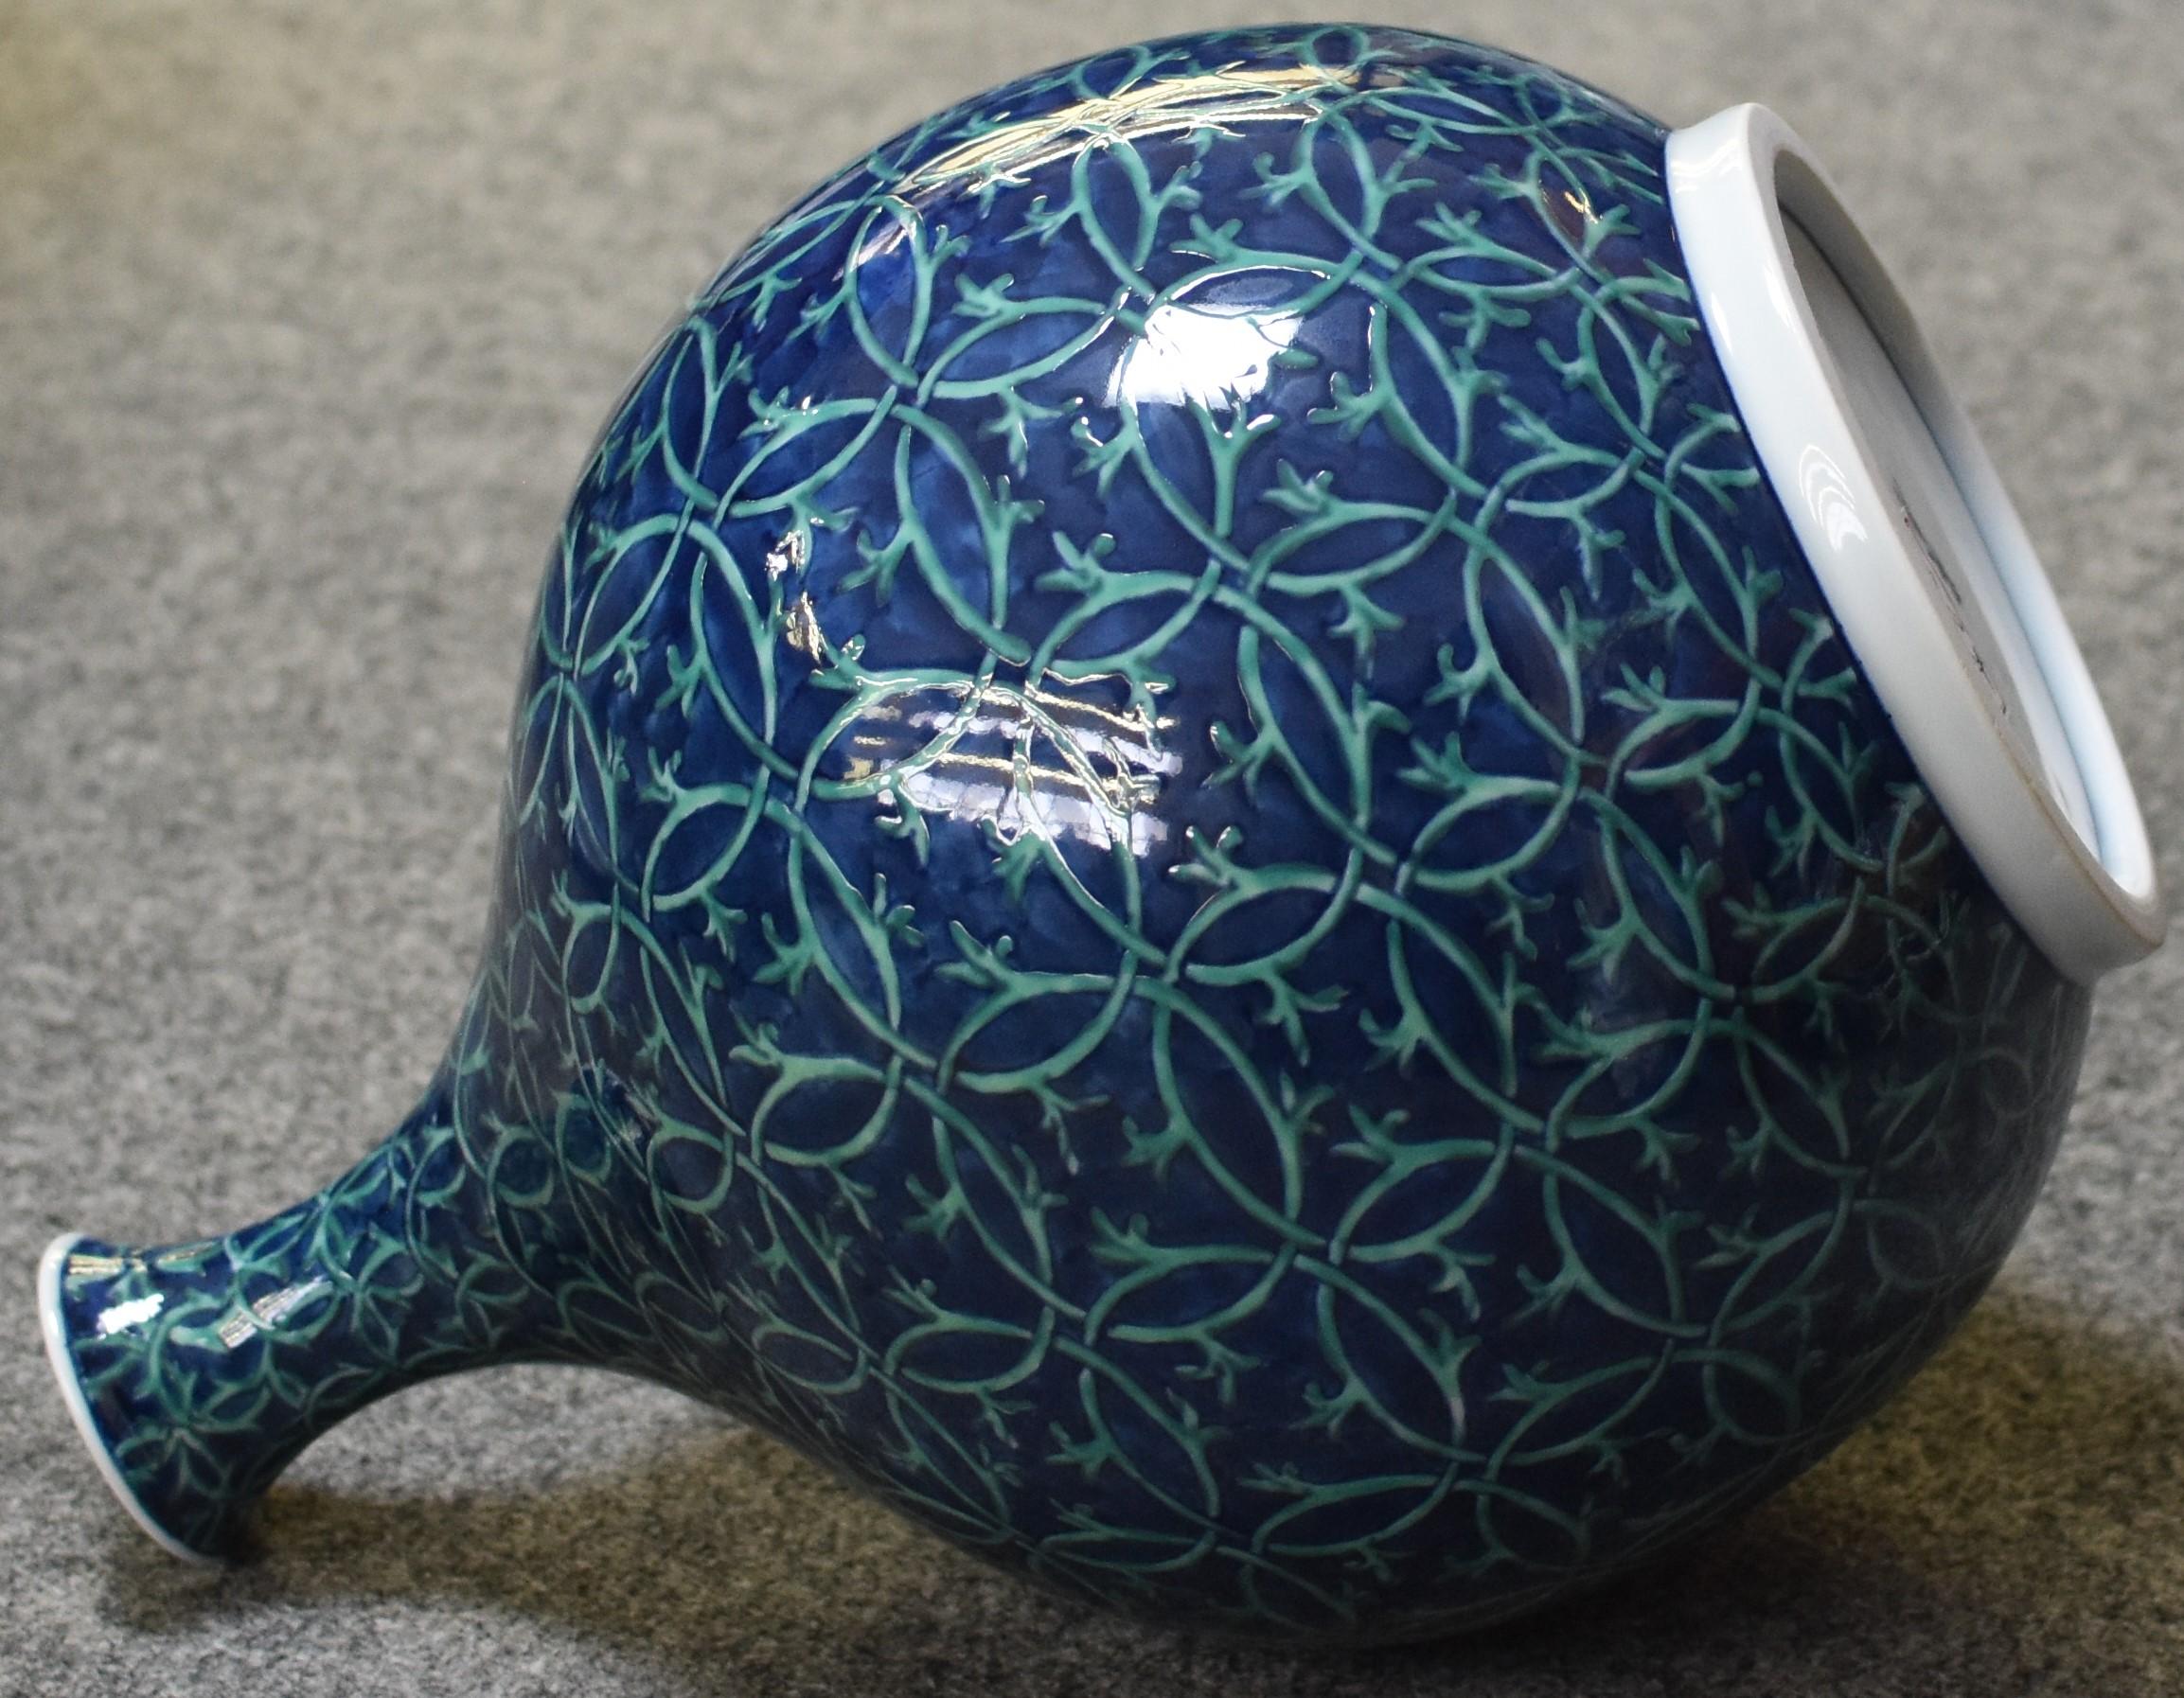 Vase contemporain japonais en porcelaine Imari signé, peint à la main en bleu et vert profonds sur un beau corps en forme de bouteille, l'œuvre de la troisième génération de maîtres porcelainiers de la région d'Imari-Arita au Japon, très acclamée et